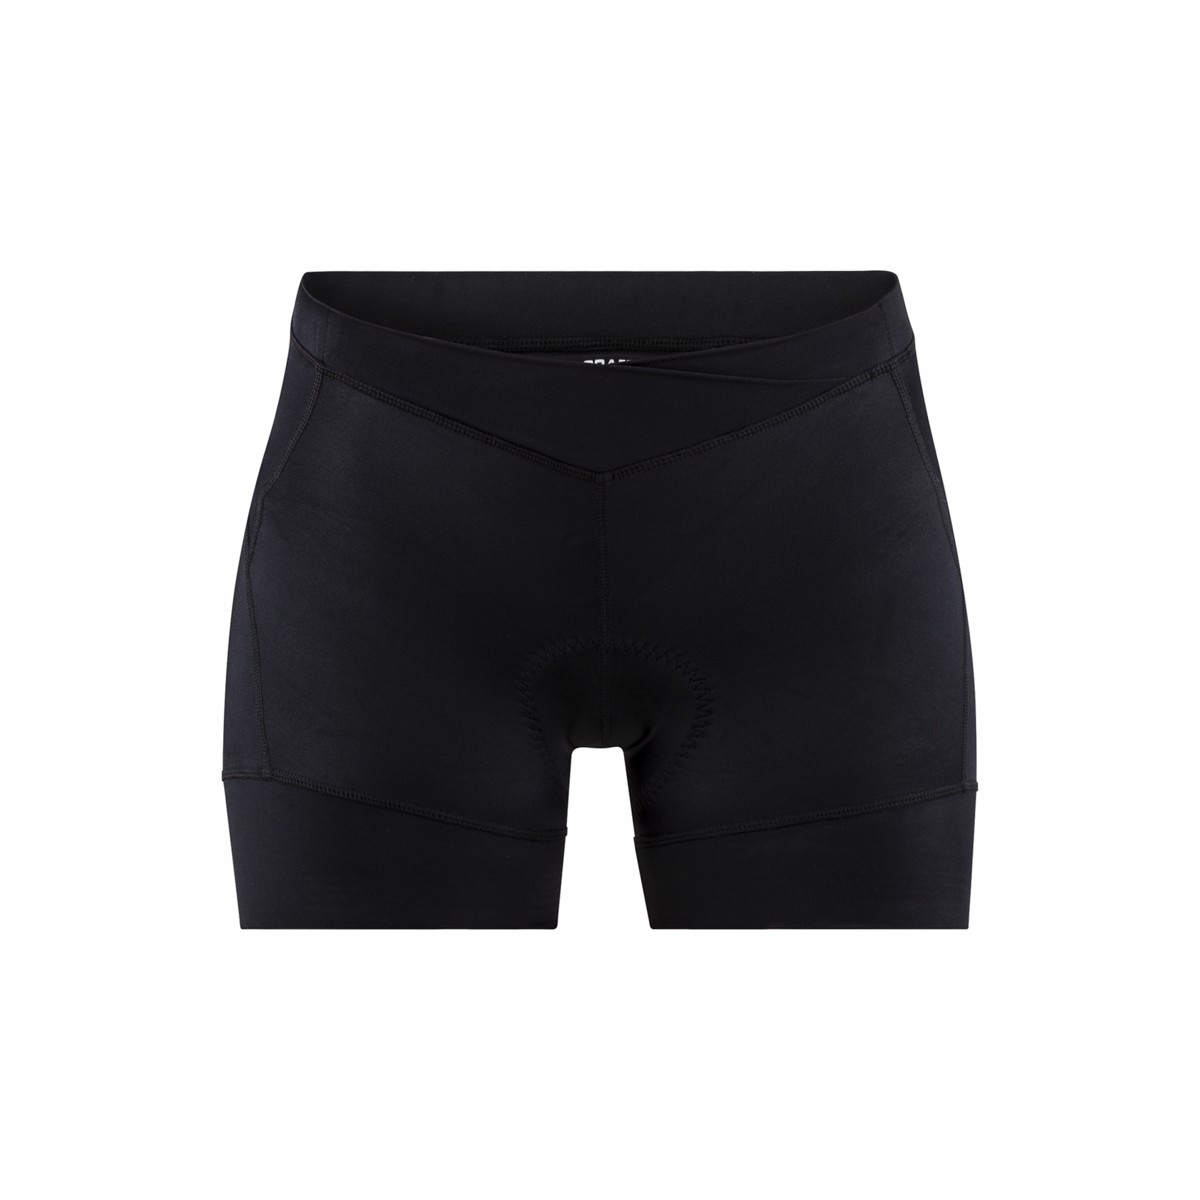 Dámské krátké cyklistické kalhoty CRAFT Essence Hot černá S